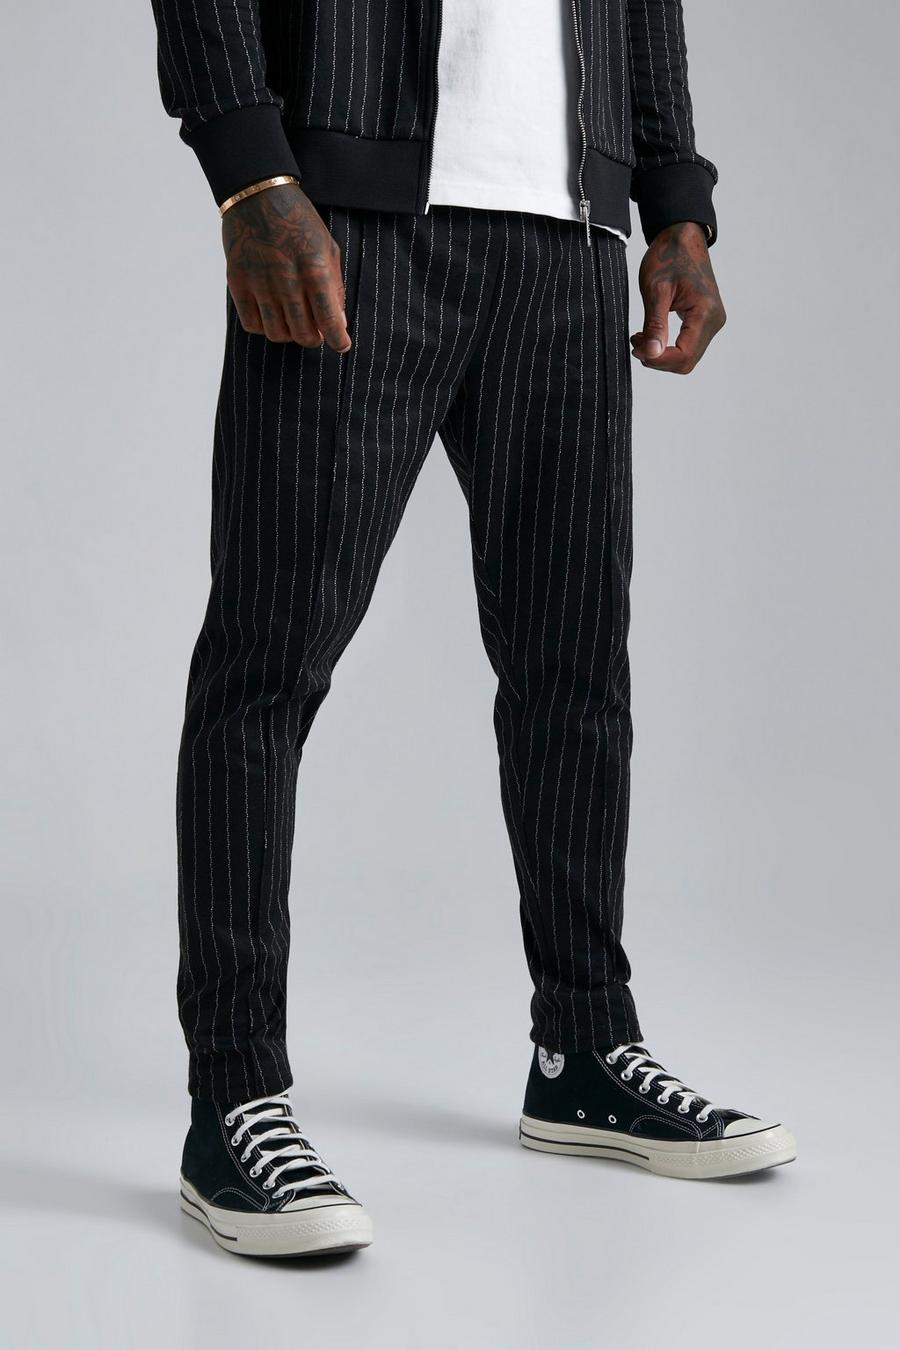 Pantaloni tuta Skinny Fit in jacquard a righe verticali con nervature, Black nero